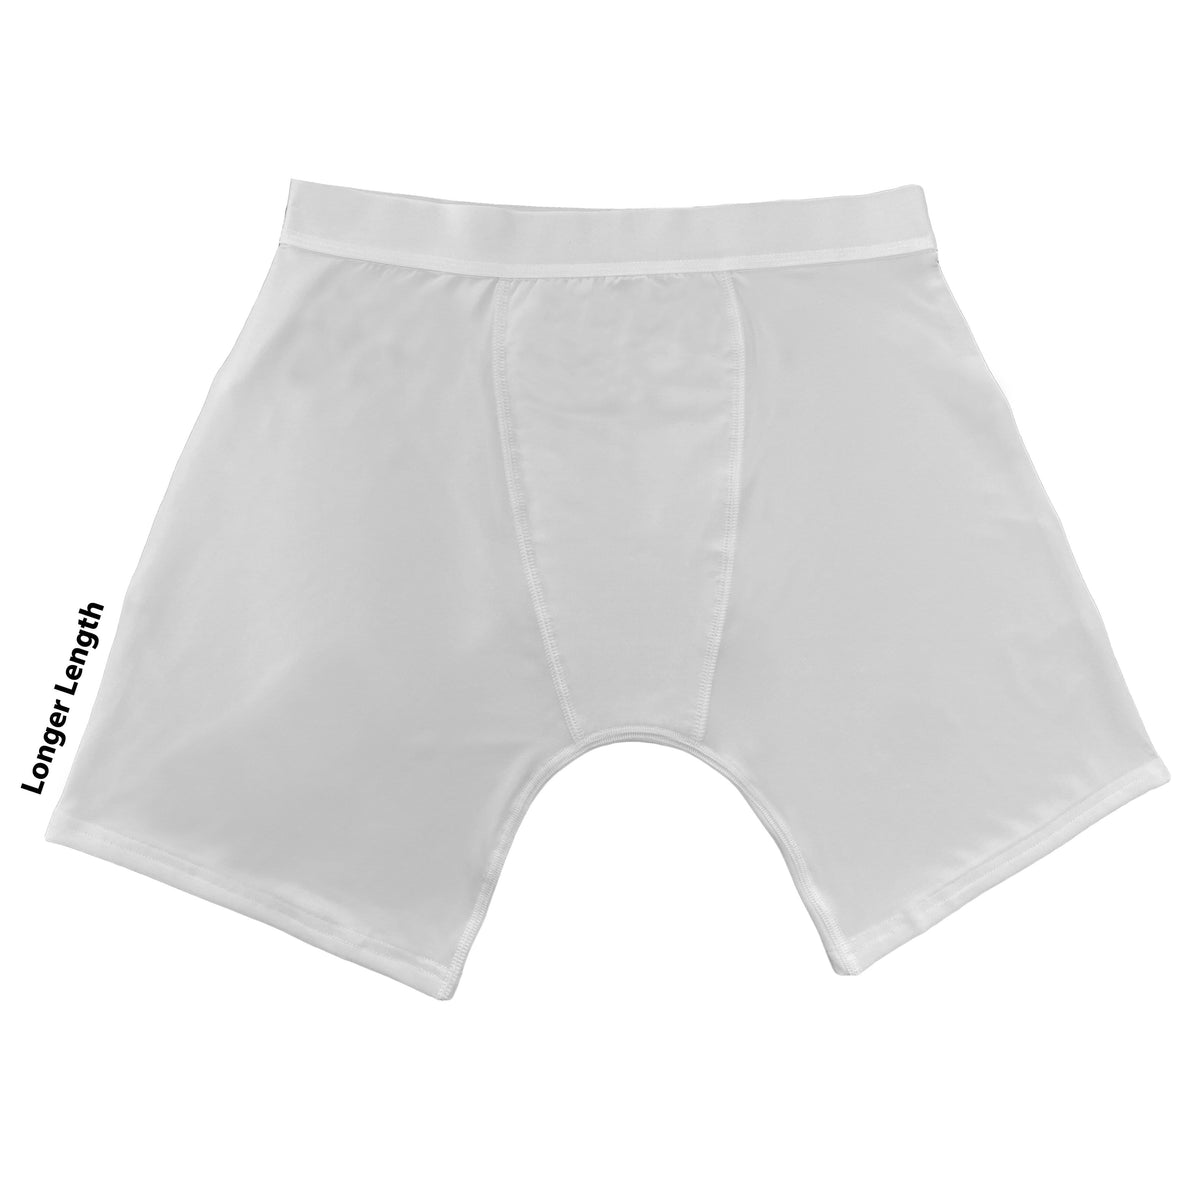 Sample Pack of Underwear/Boxers